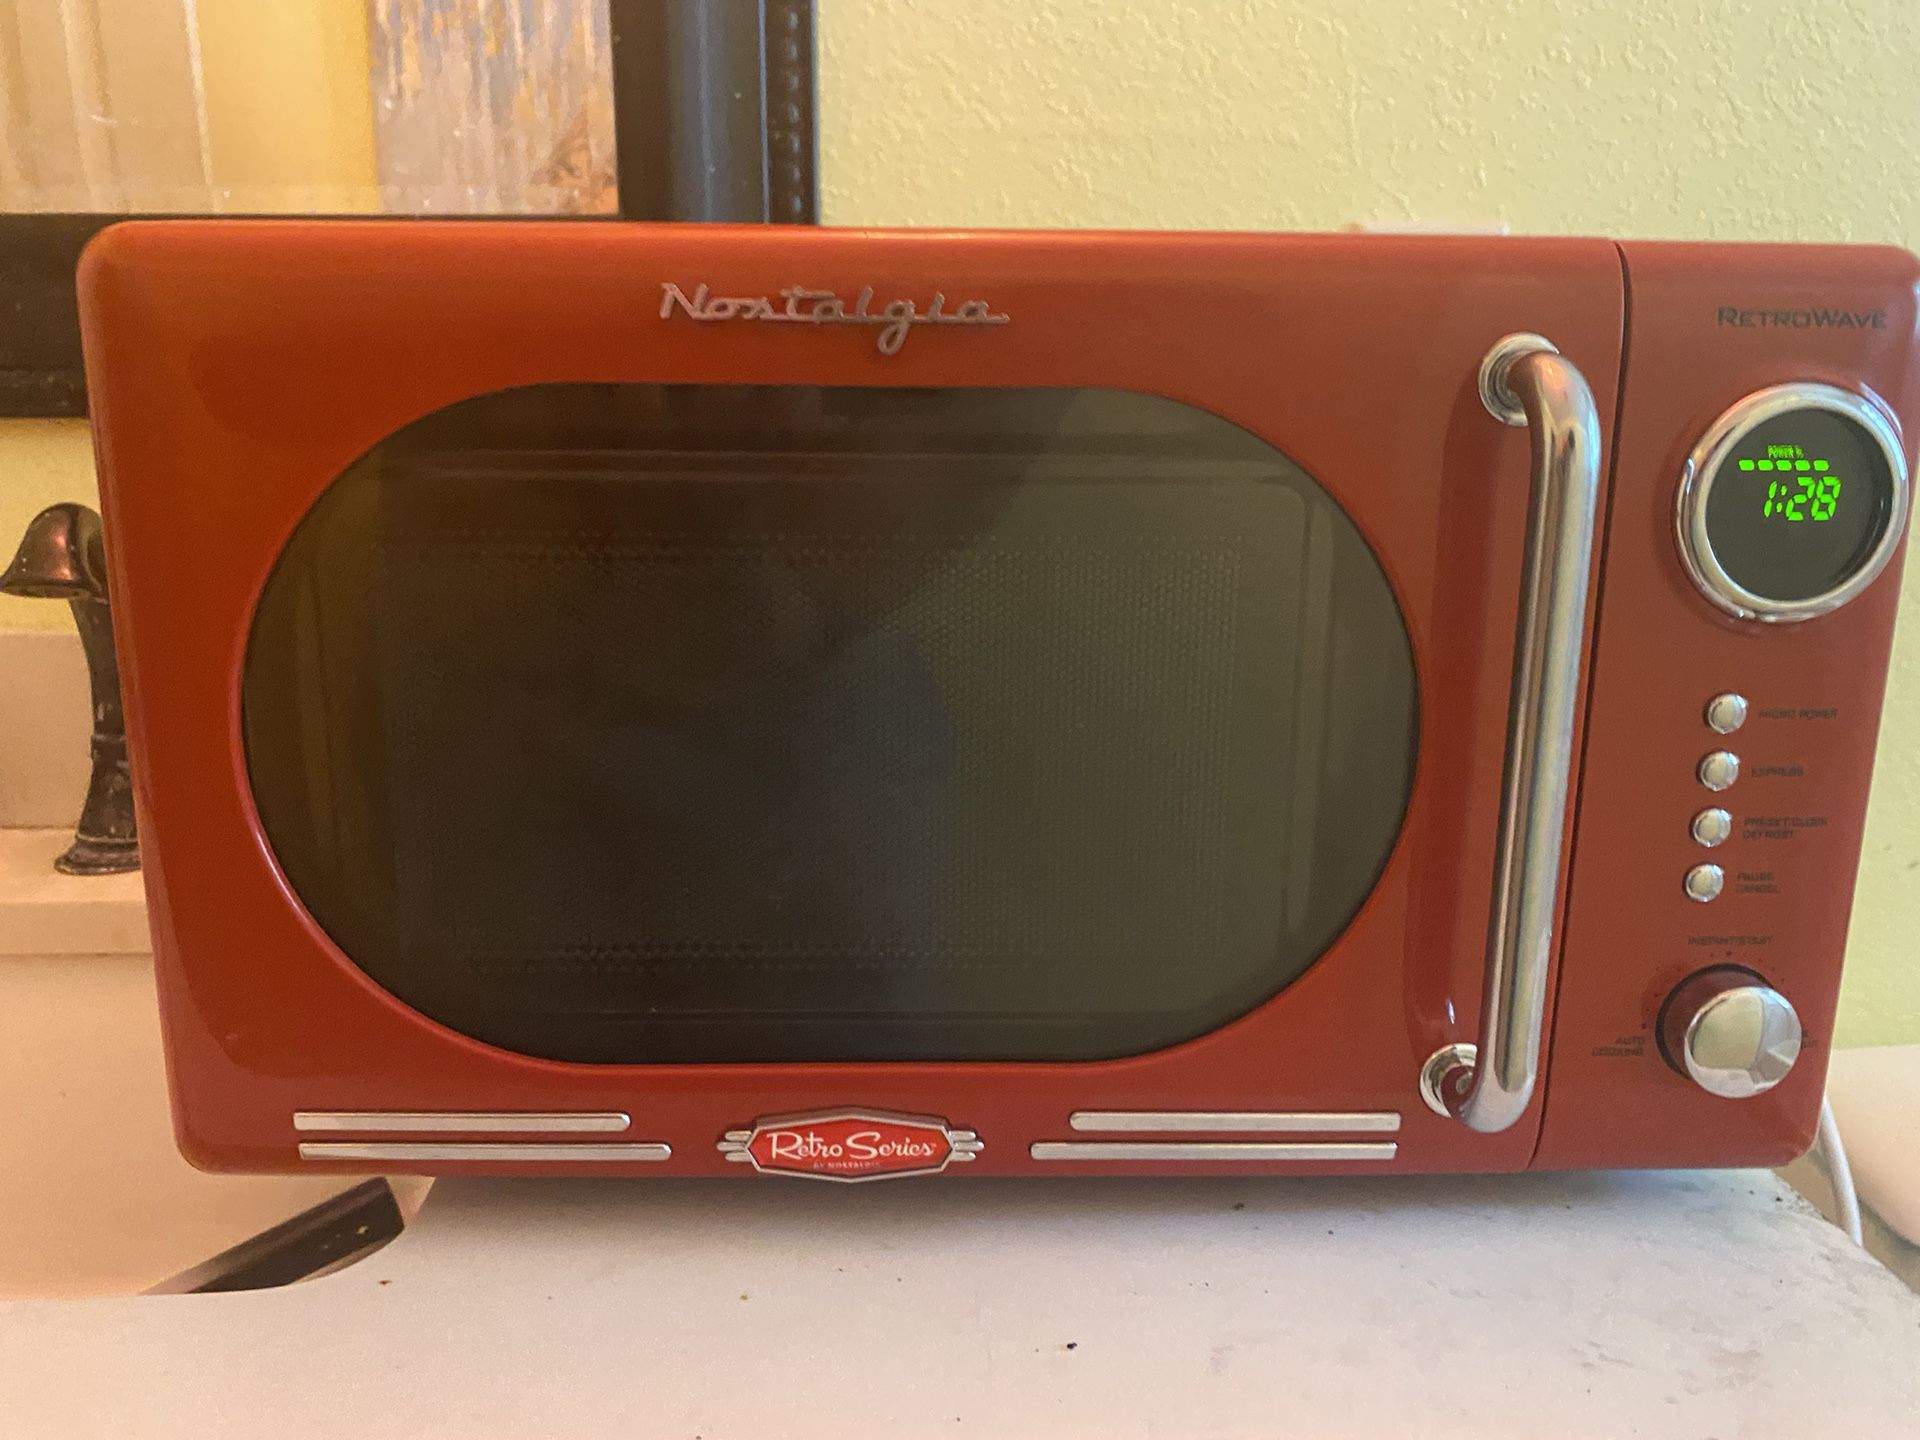 brand New Nostalgia, Retro Series Microwave, 700 W